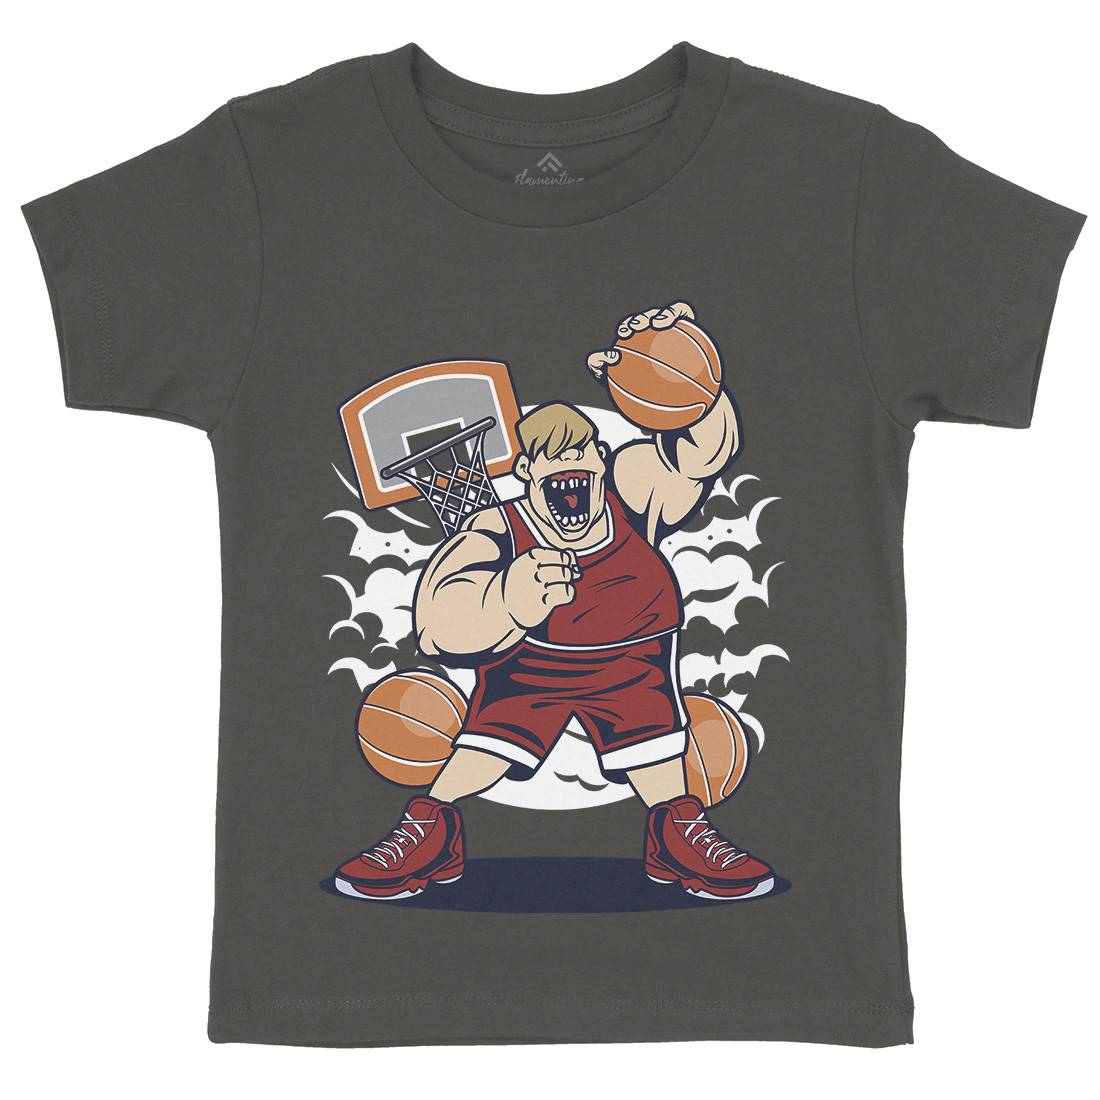 Fat Basketball Player Kids Crew Neck T-Shirt Sport C350